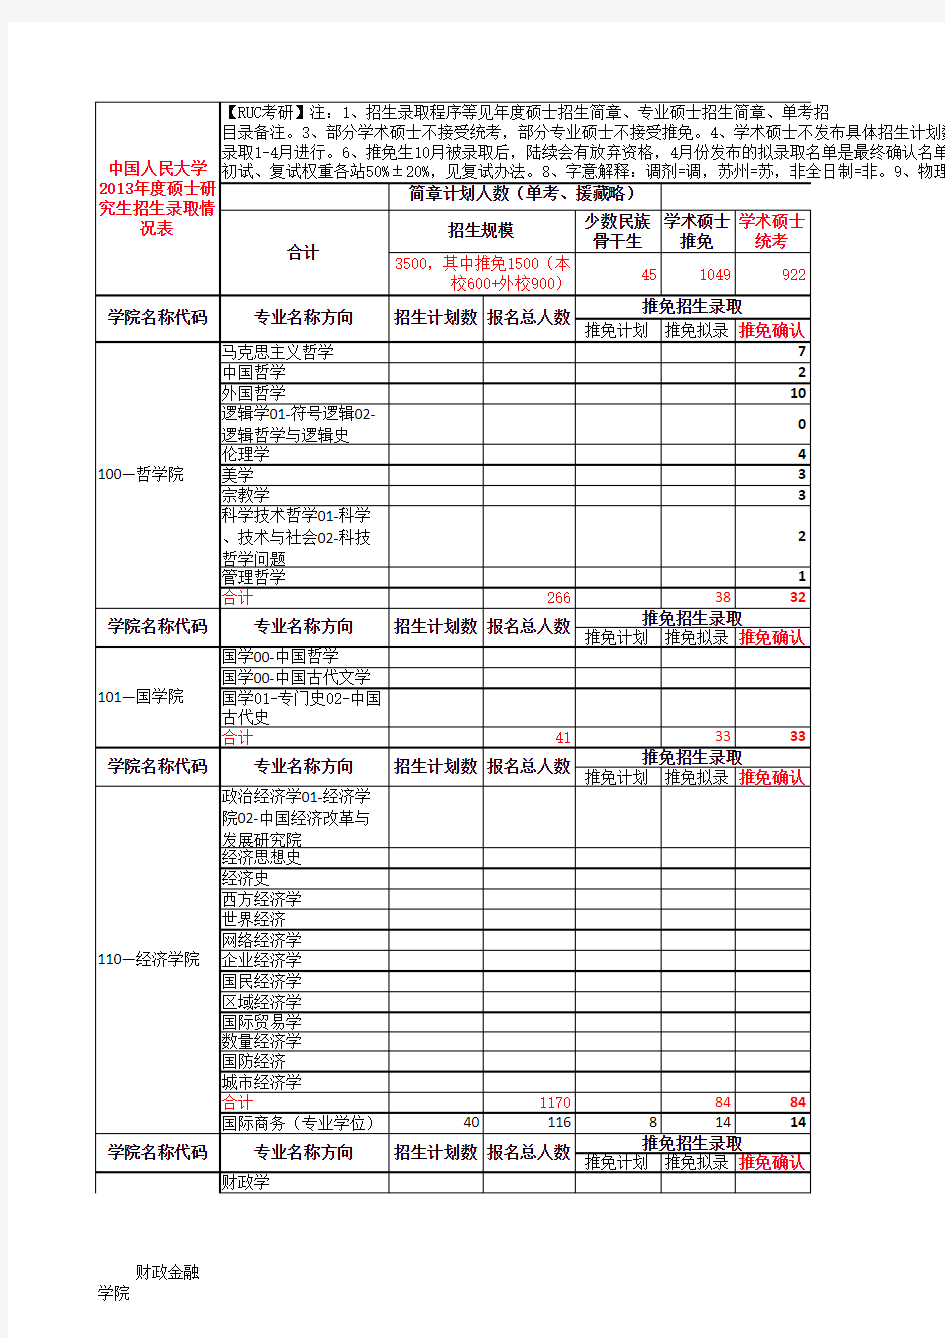 中国人民大学2013年度硕士研究生招生录取情况表